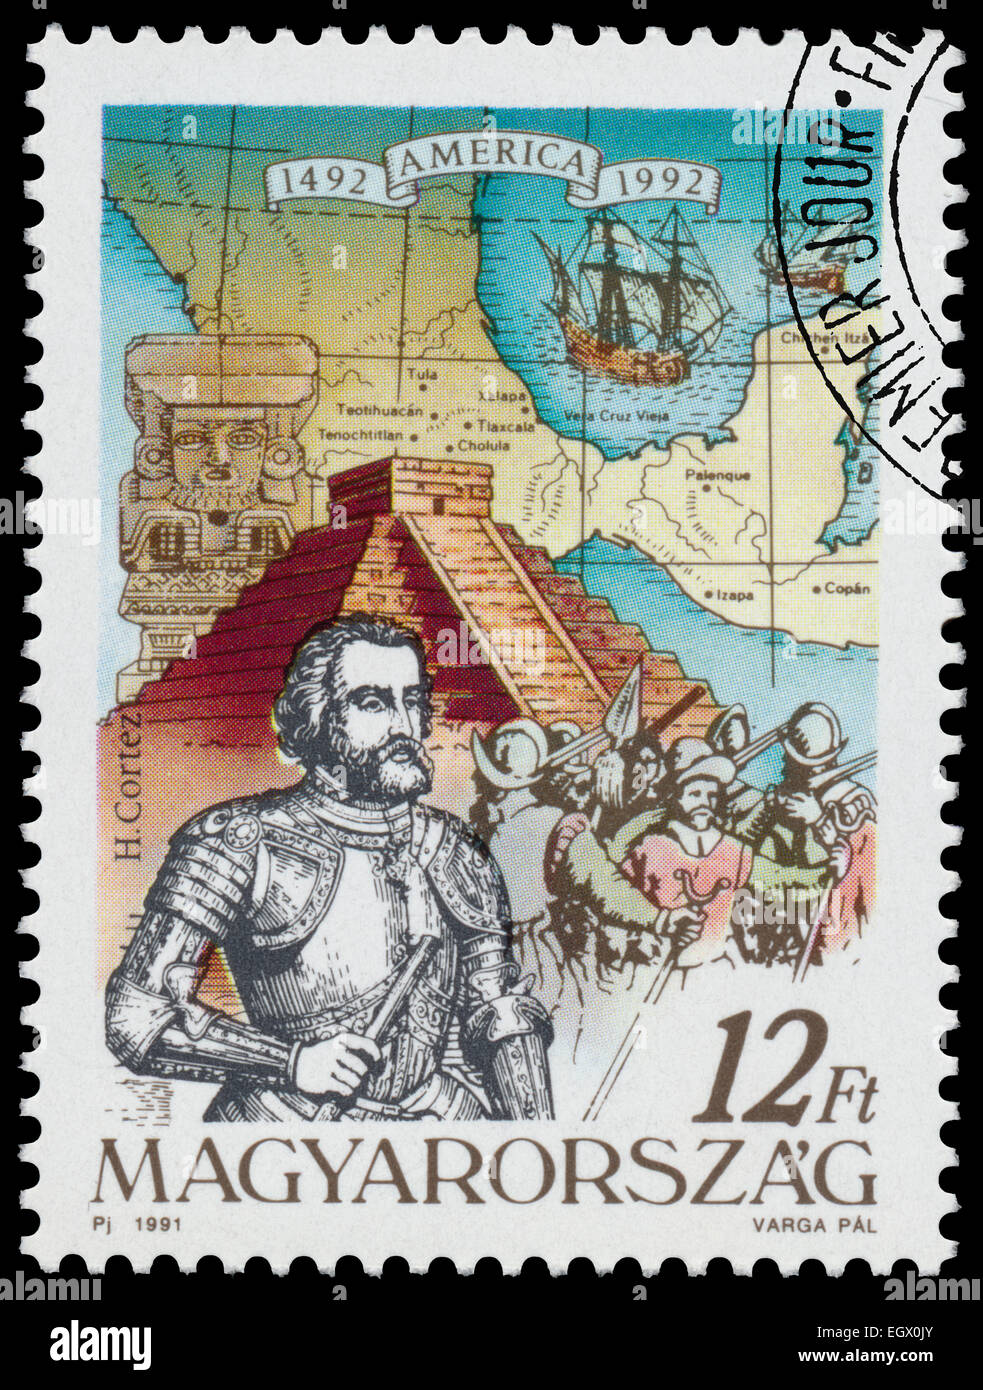 Ungarn - ca. 1991: Briefmarke gedruckt in Ungarn aus der Ausgabe zeigt der 500. Jahrestag der Entdeckung Amerikas H. Cortez Stockfoto